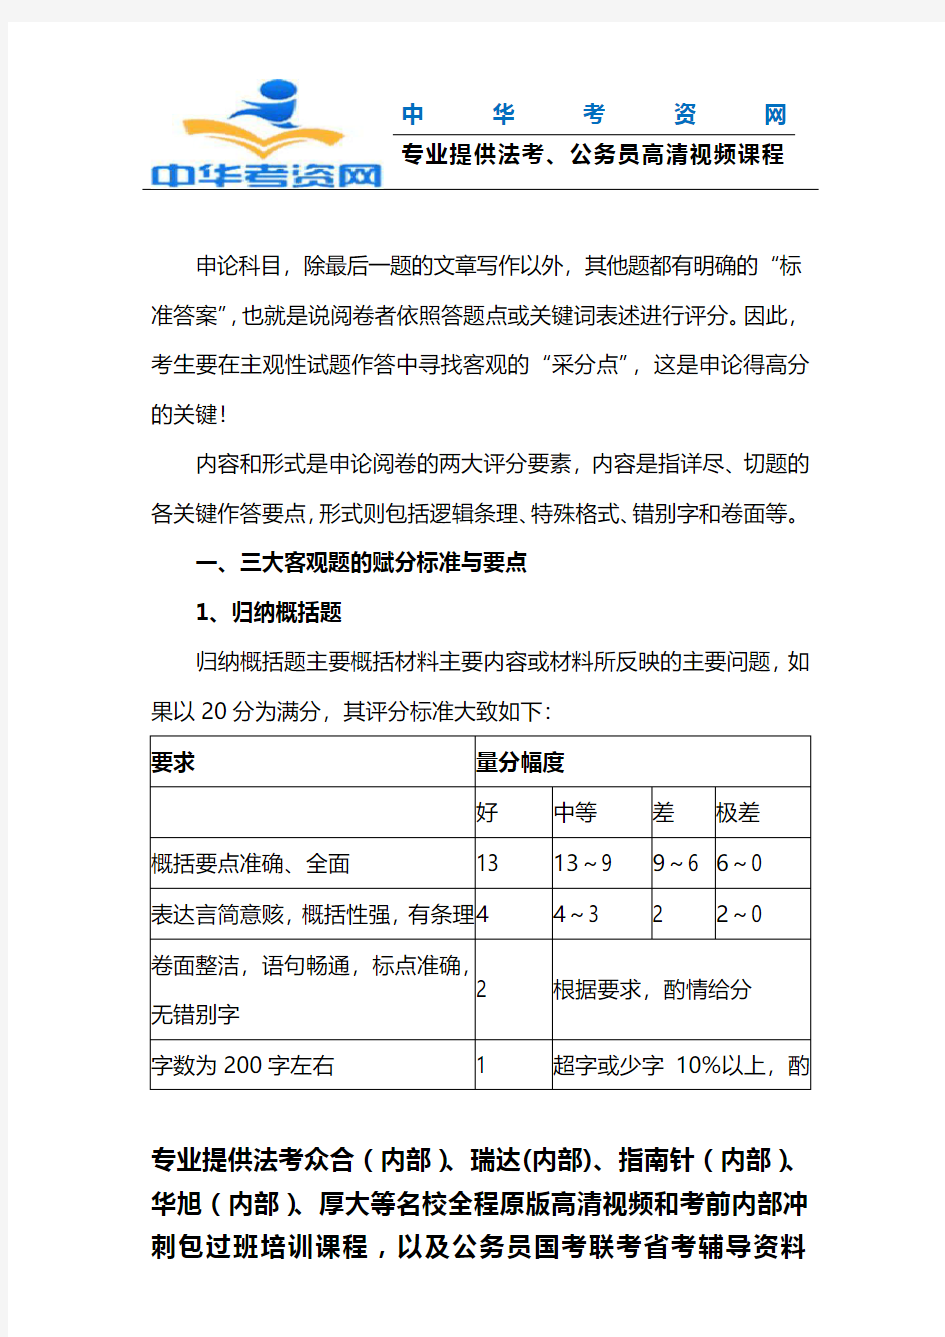 2019江苏省考申论阅卷赋分标准与要点